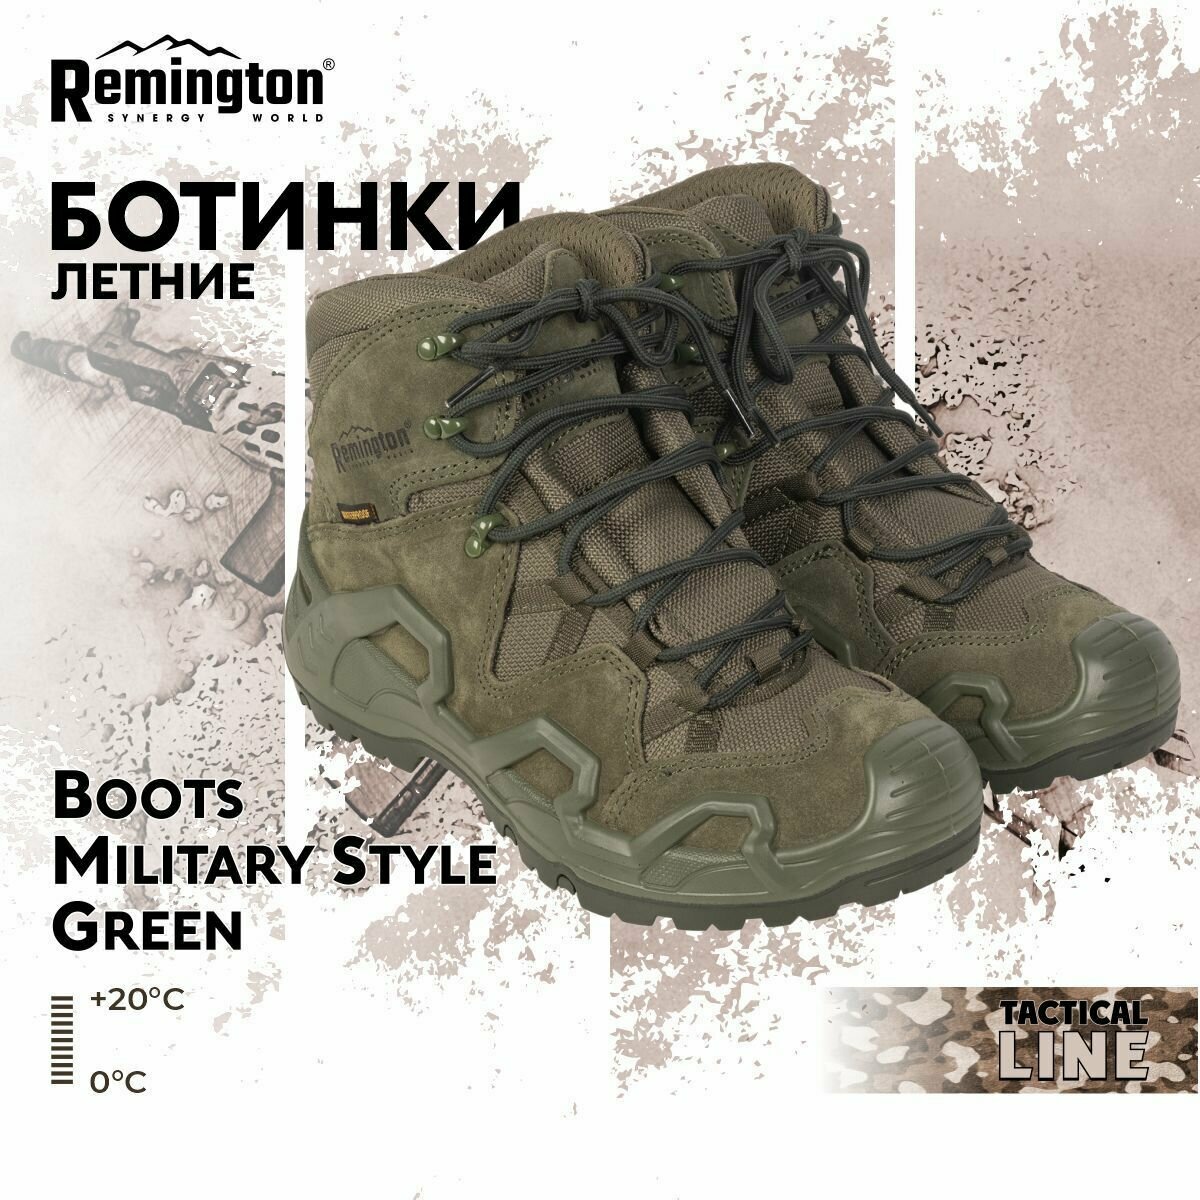 Ботинки Remington Boots Military Style Green р. 41 RB4435-306